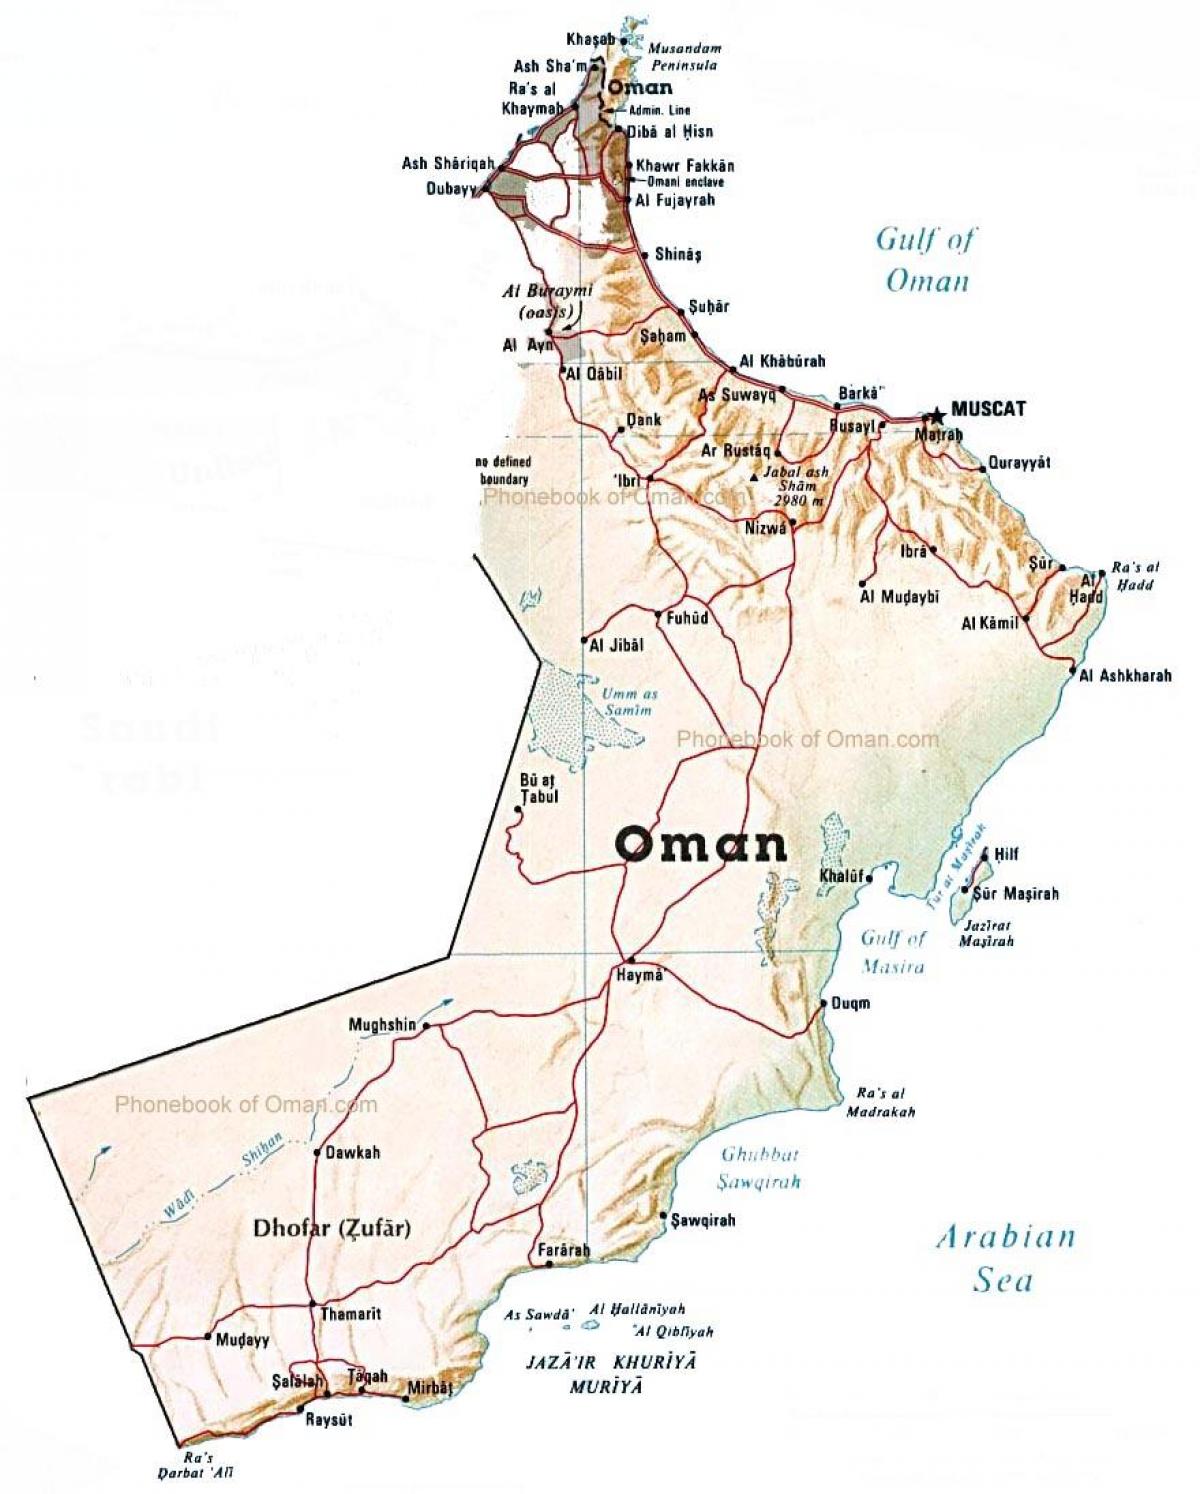 Oman ölkə xəritəsi